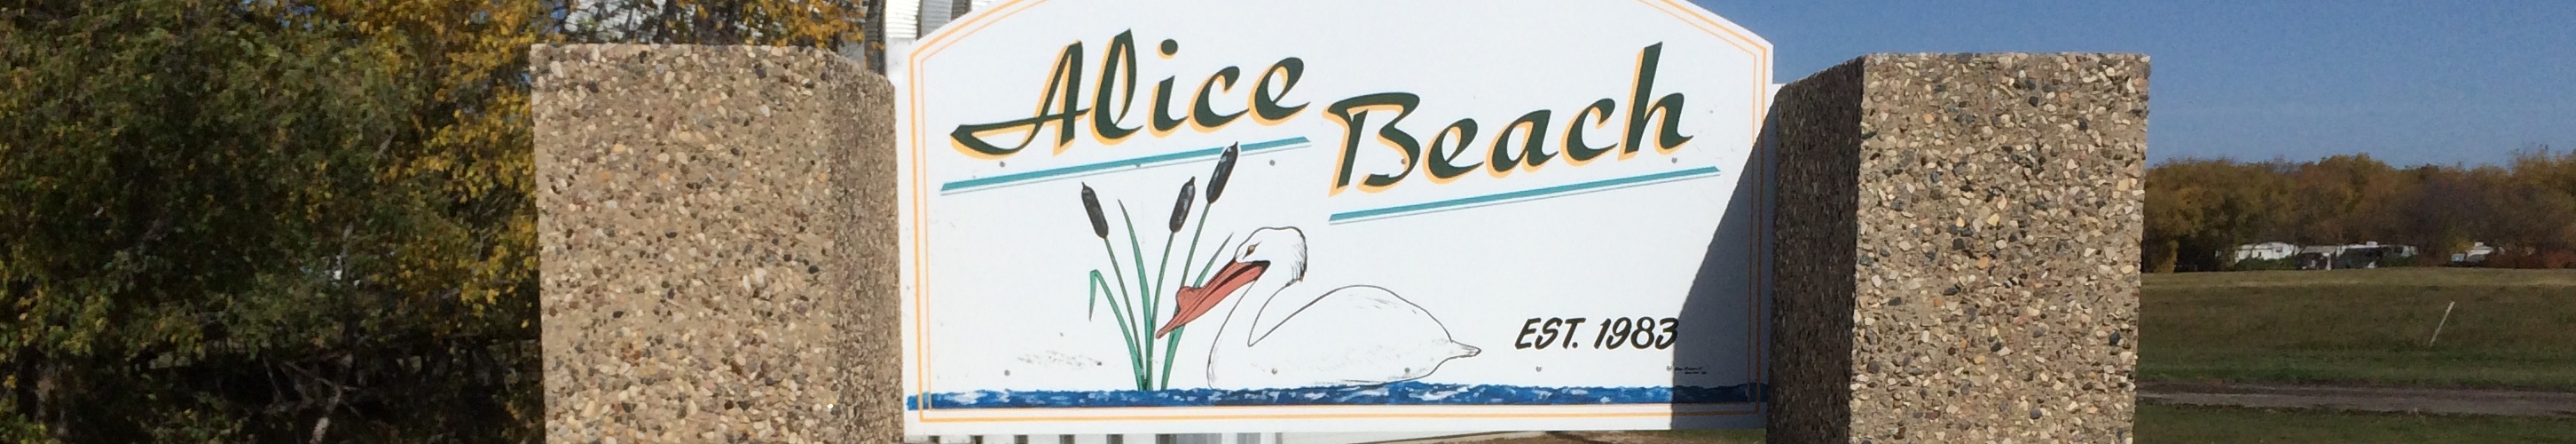 Alice Beach